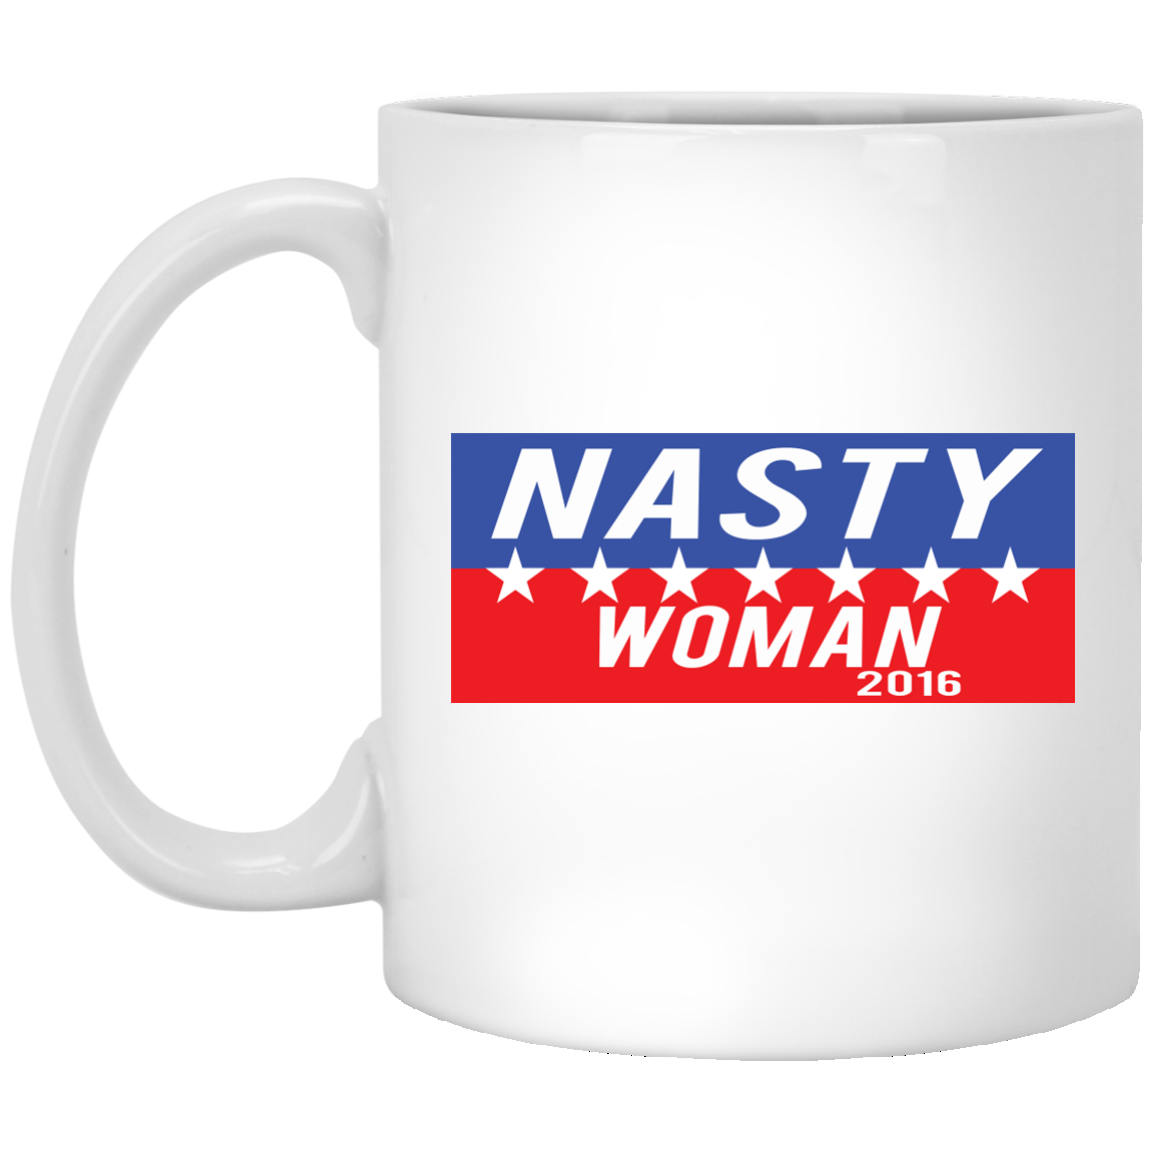 Nasty woman mug, travel mug election 2016